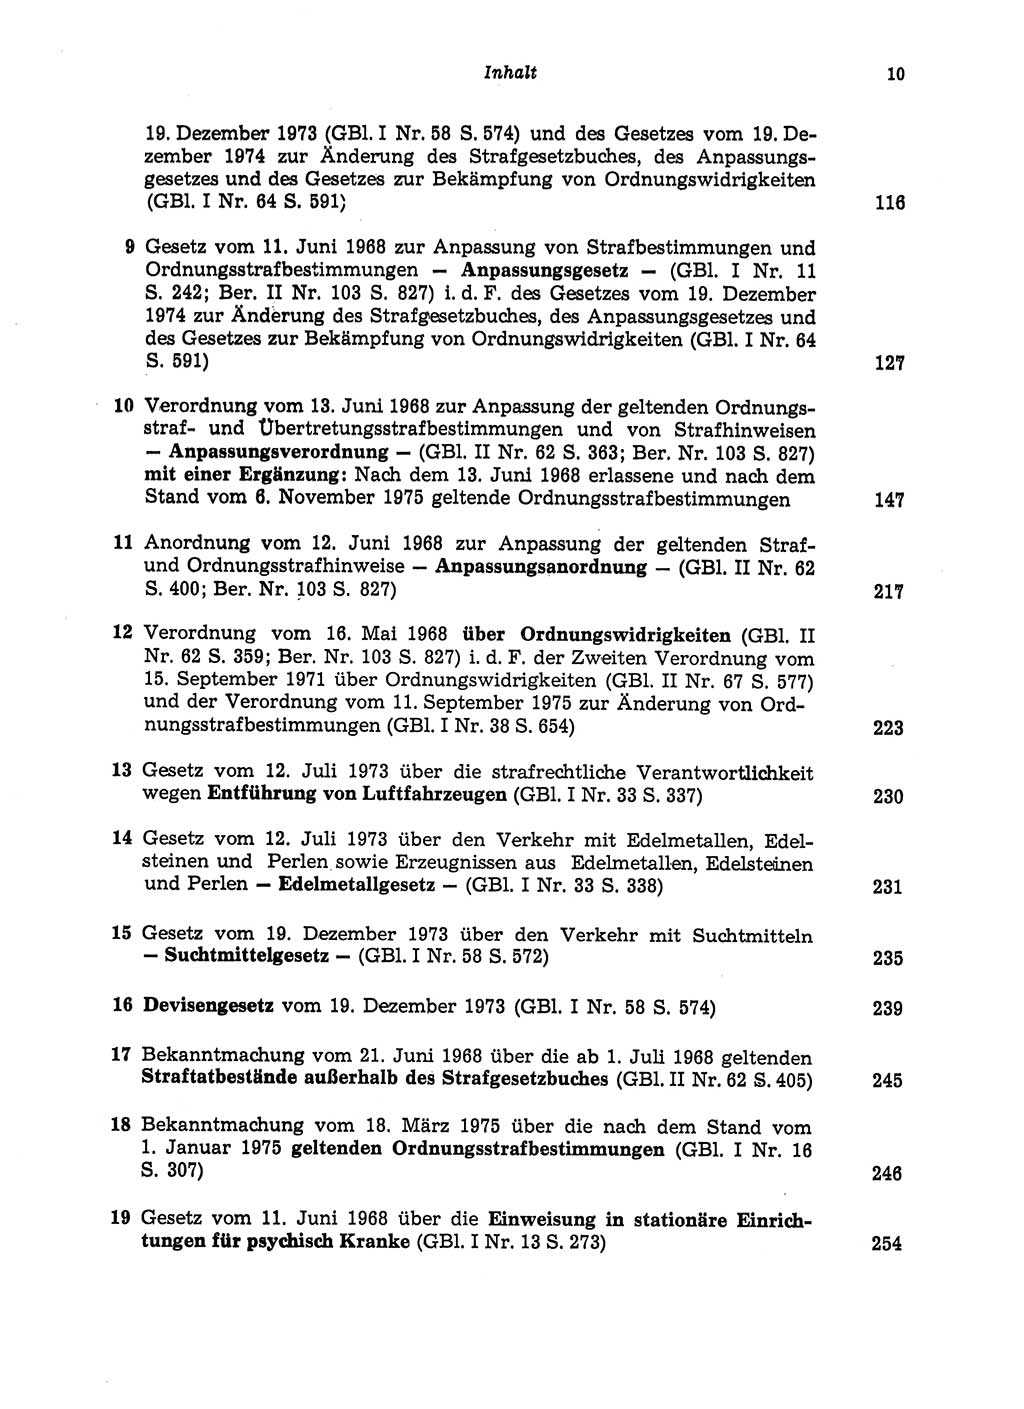 Strafgesetzbuch (StGB) der Deutschen Demokratischen Republik (DDR) und angrenzende Gesetze und Bestimmungen 1975, Seite 10 (StGB DDR Ges. Best. 1975, S. 10)